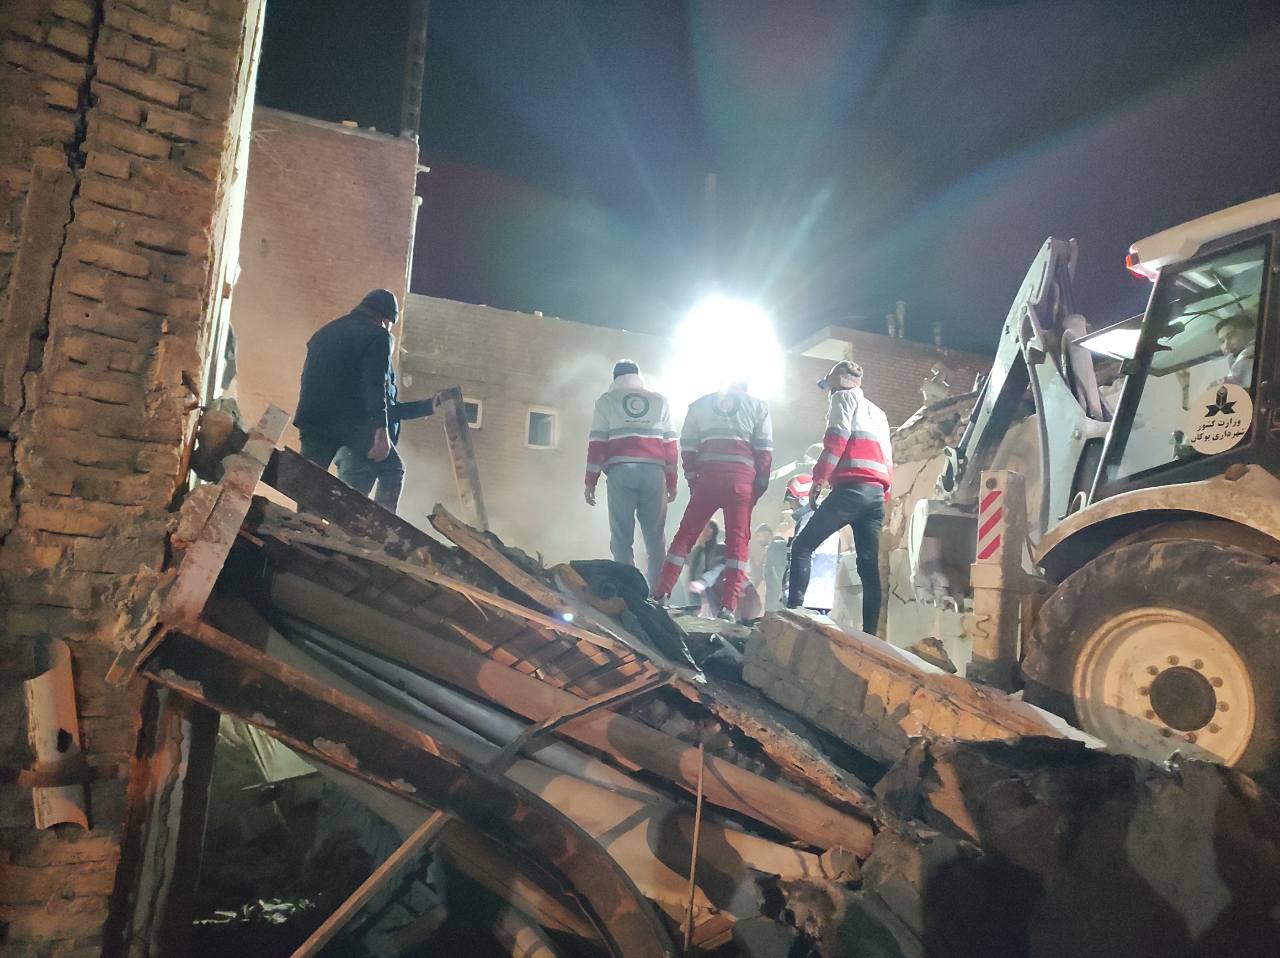 حادثه انفجار منزلی مسکونی در بوکان جان باختن ۶ عضو یک خانواده و مصدومیت ۲ نفر دیگر را رقم زد.
